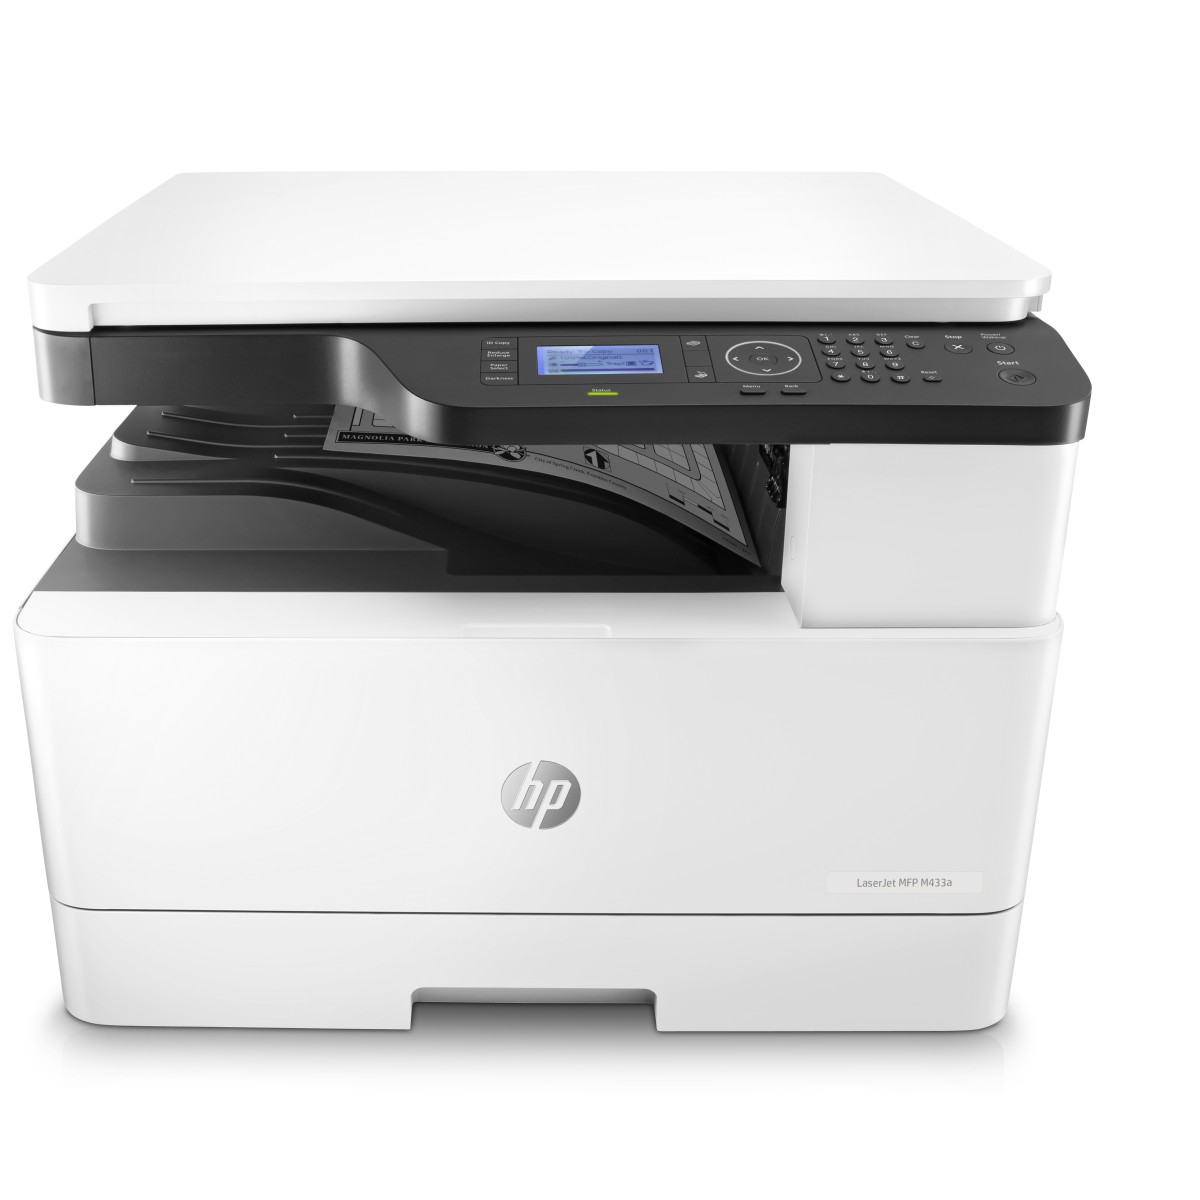 Tiskárna HP LaserJet MFP M433a / bílá / černá